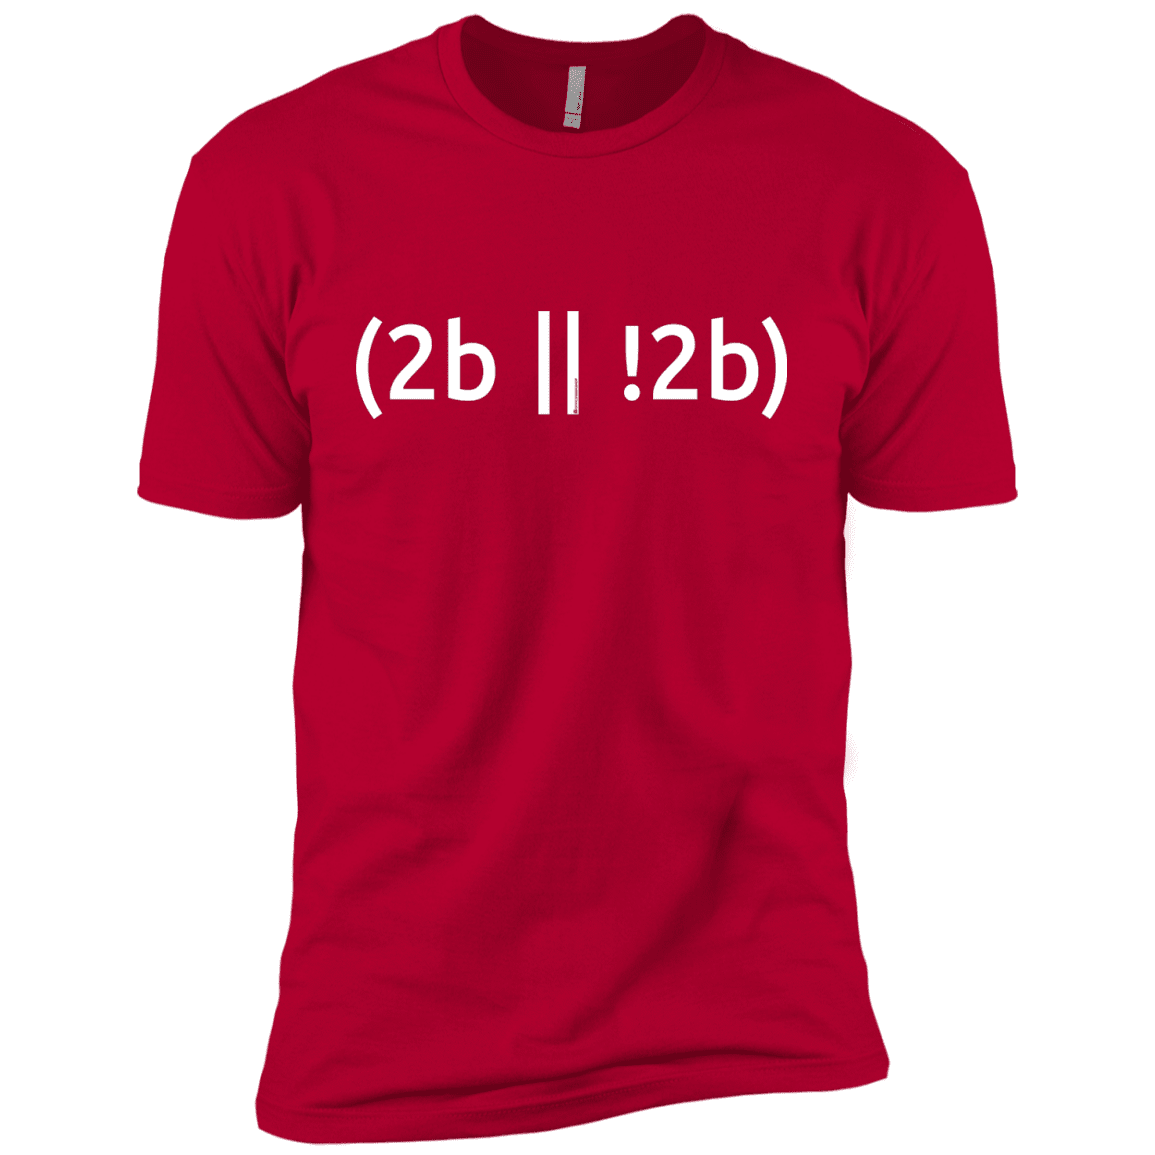 T-Shirts Red / YXS 2b Or Not 2b Boys Premium T-Shirt